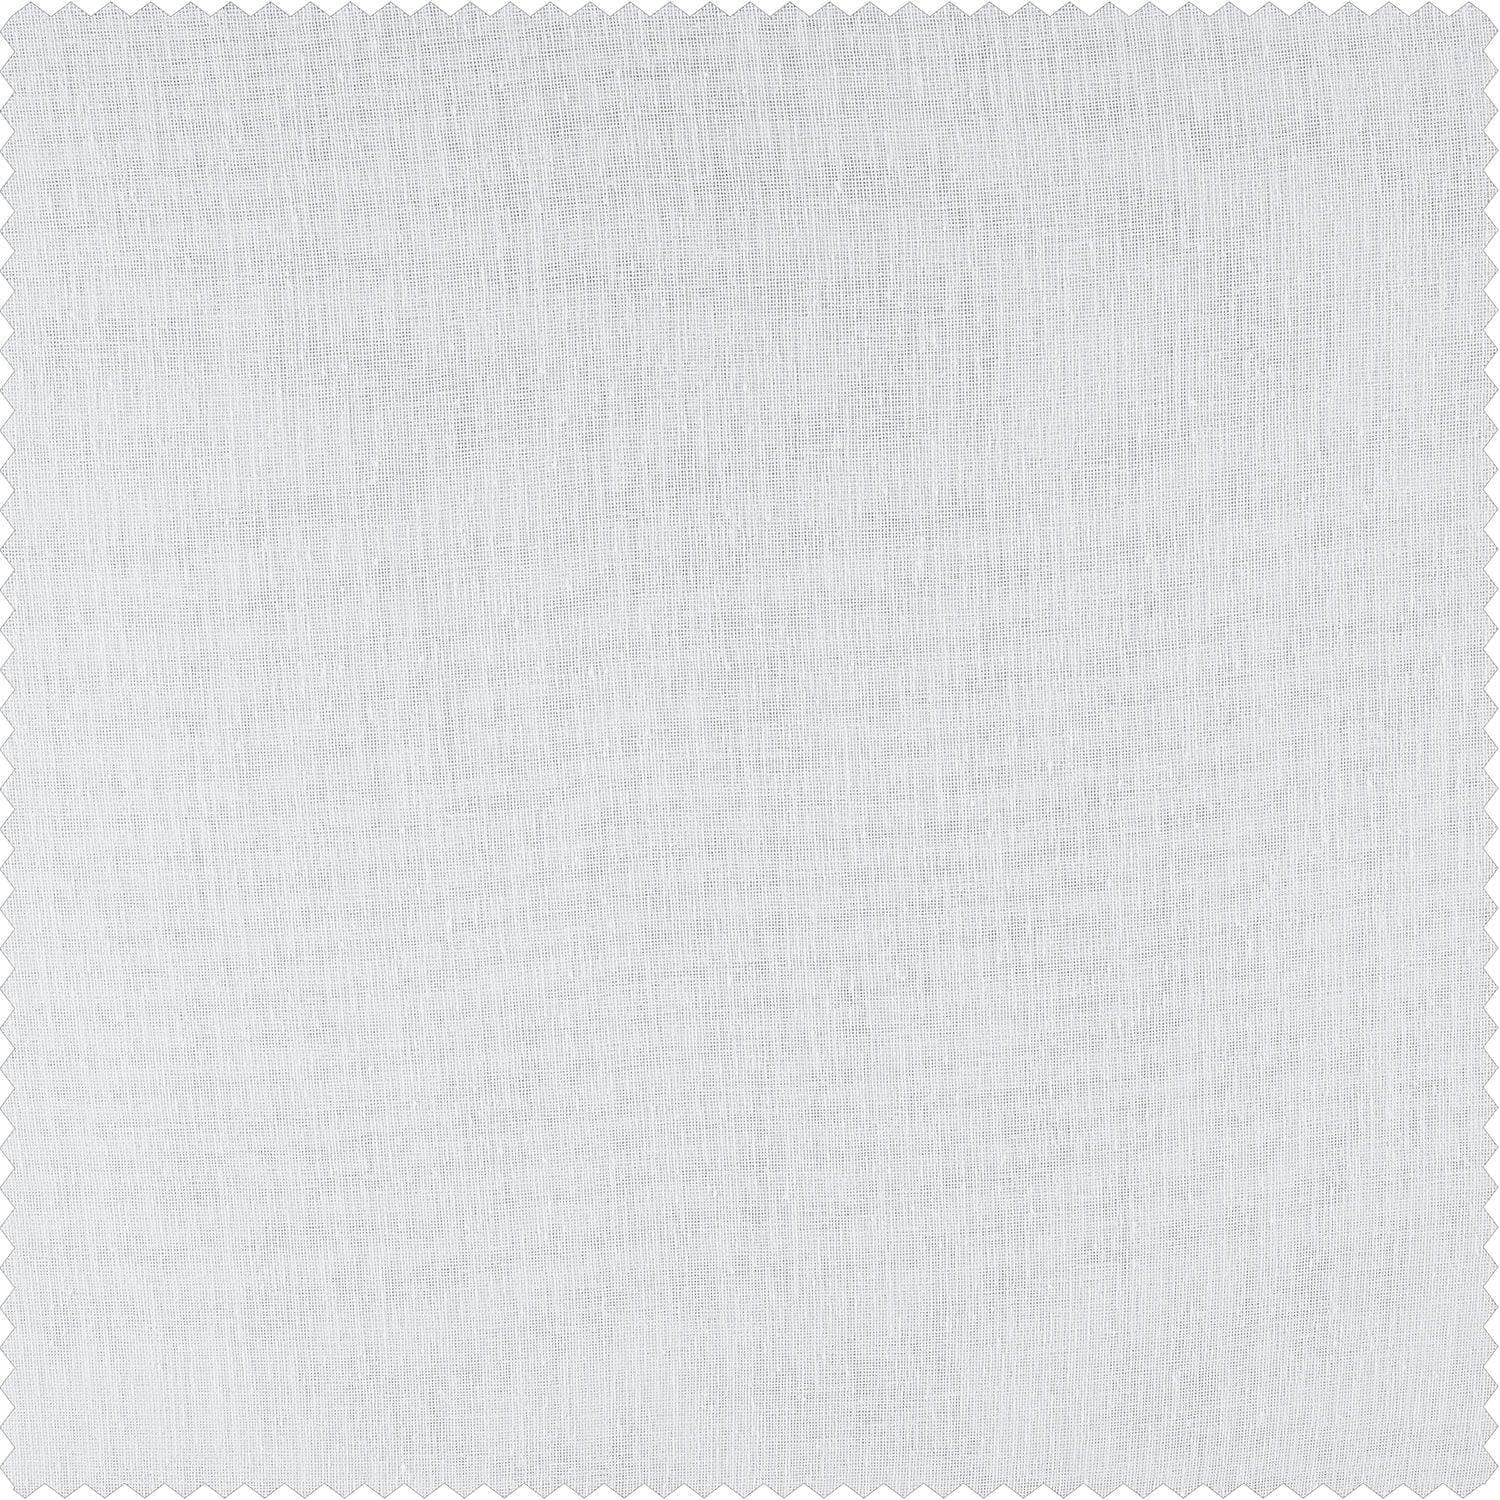 Aspen White Textured Faux Linen Sheer Custom Curtain